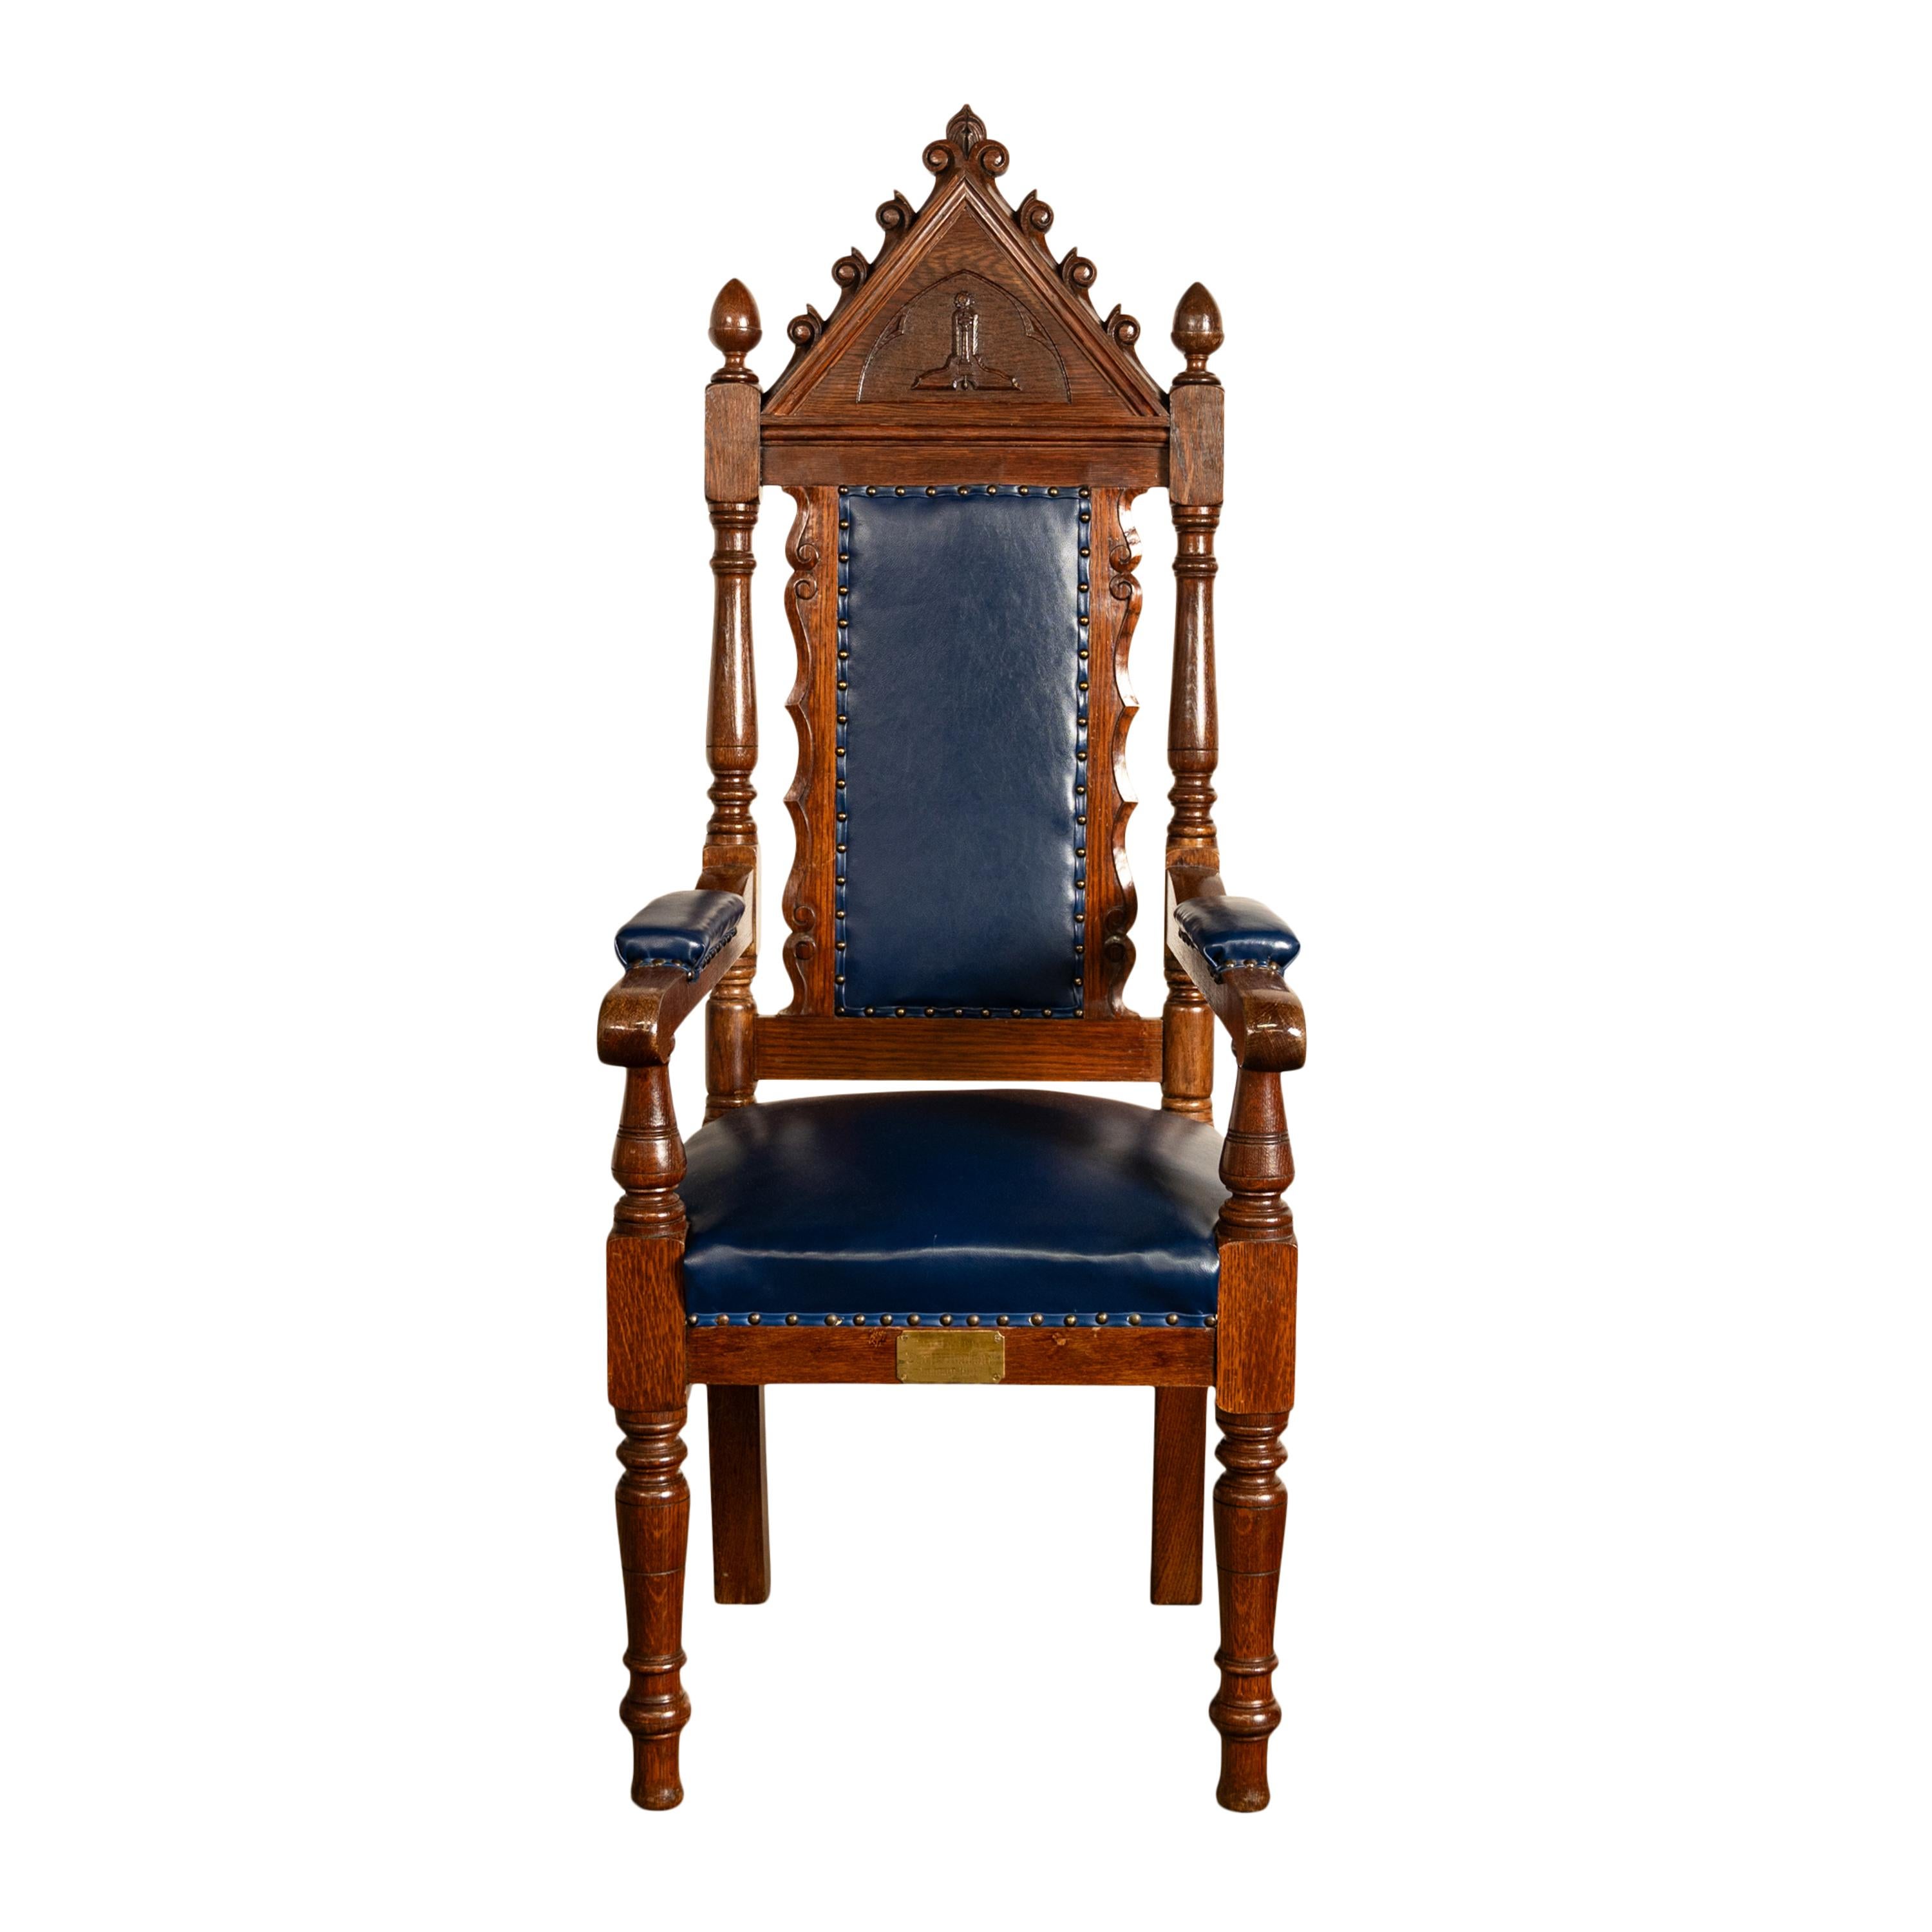 Cuir Ensemble antique de 5 chaises trônes irlandaises maçonniques de style néo-gothique en chêne et cuir 1900